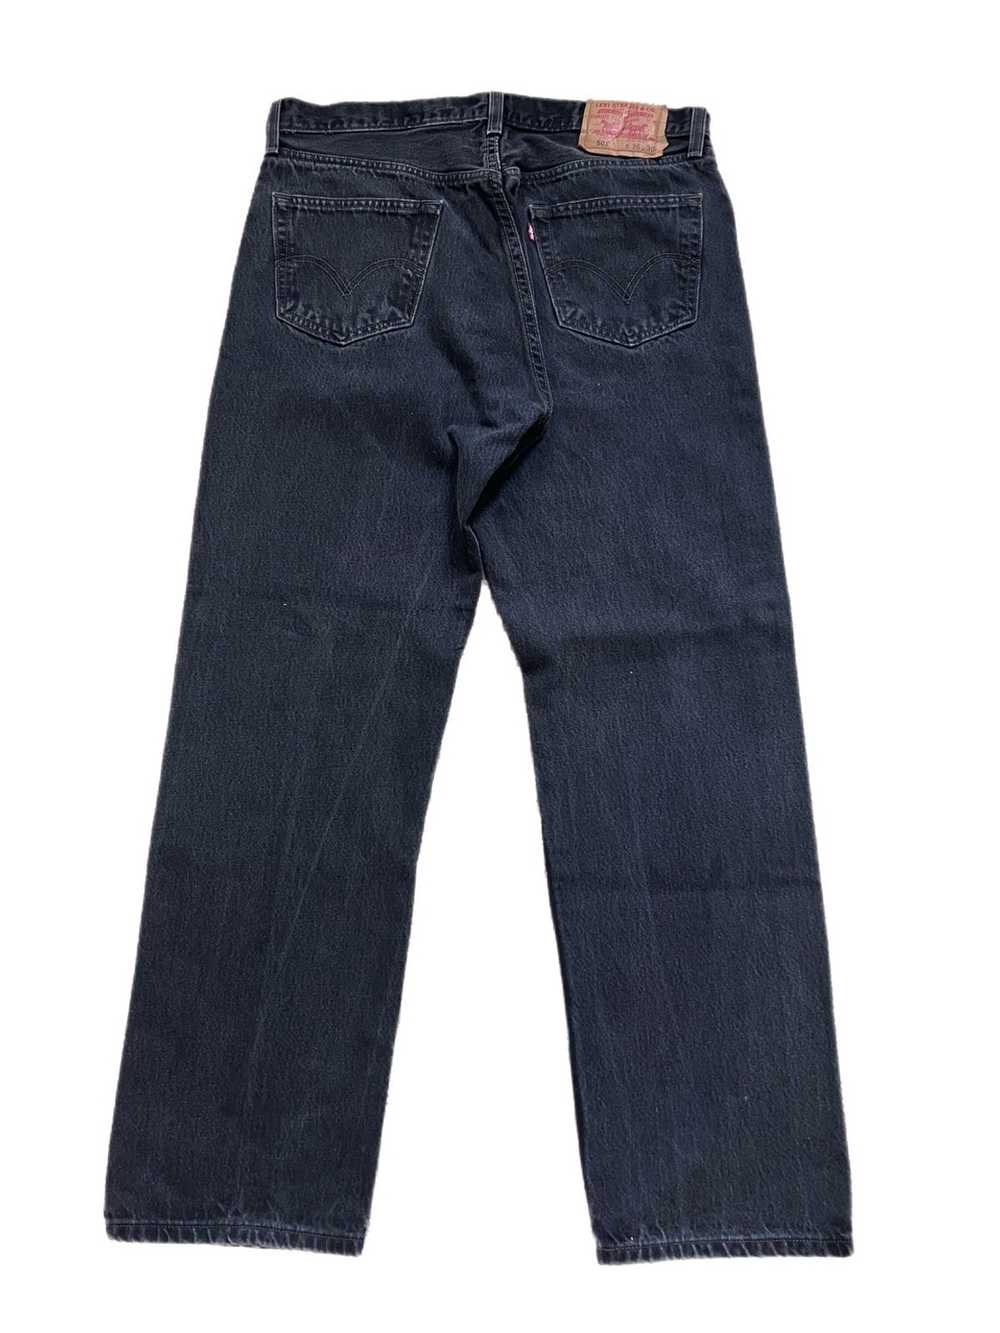 Levi's × Vintage Vintage 501 Black Denim Jeans - image 4